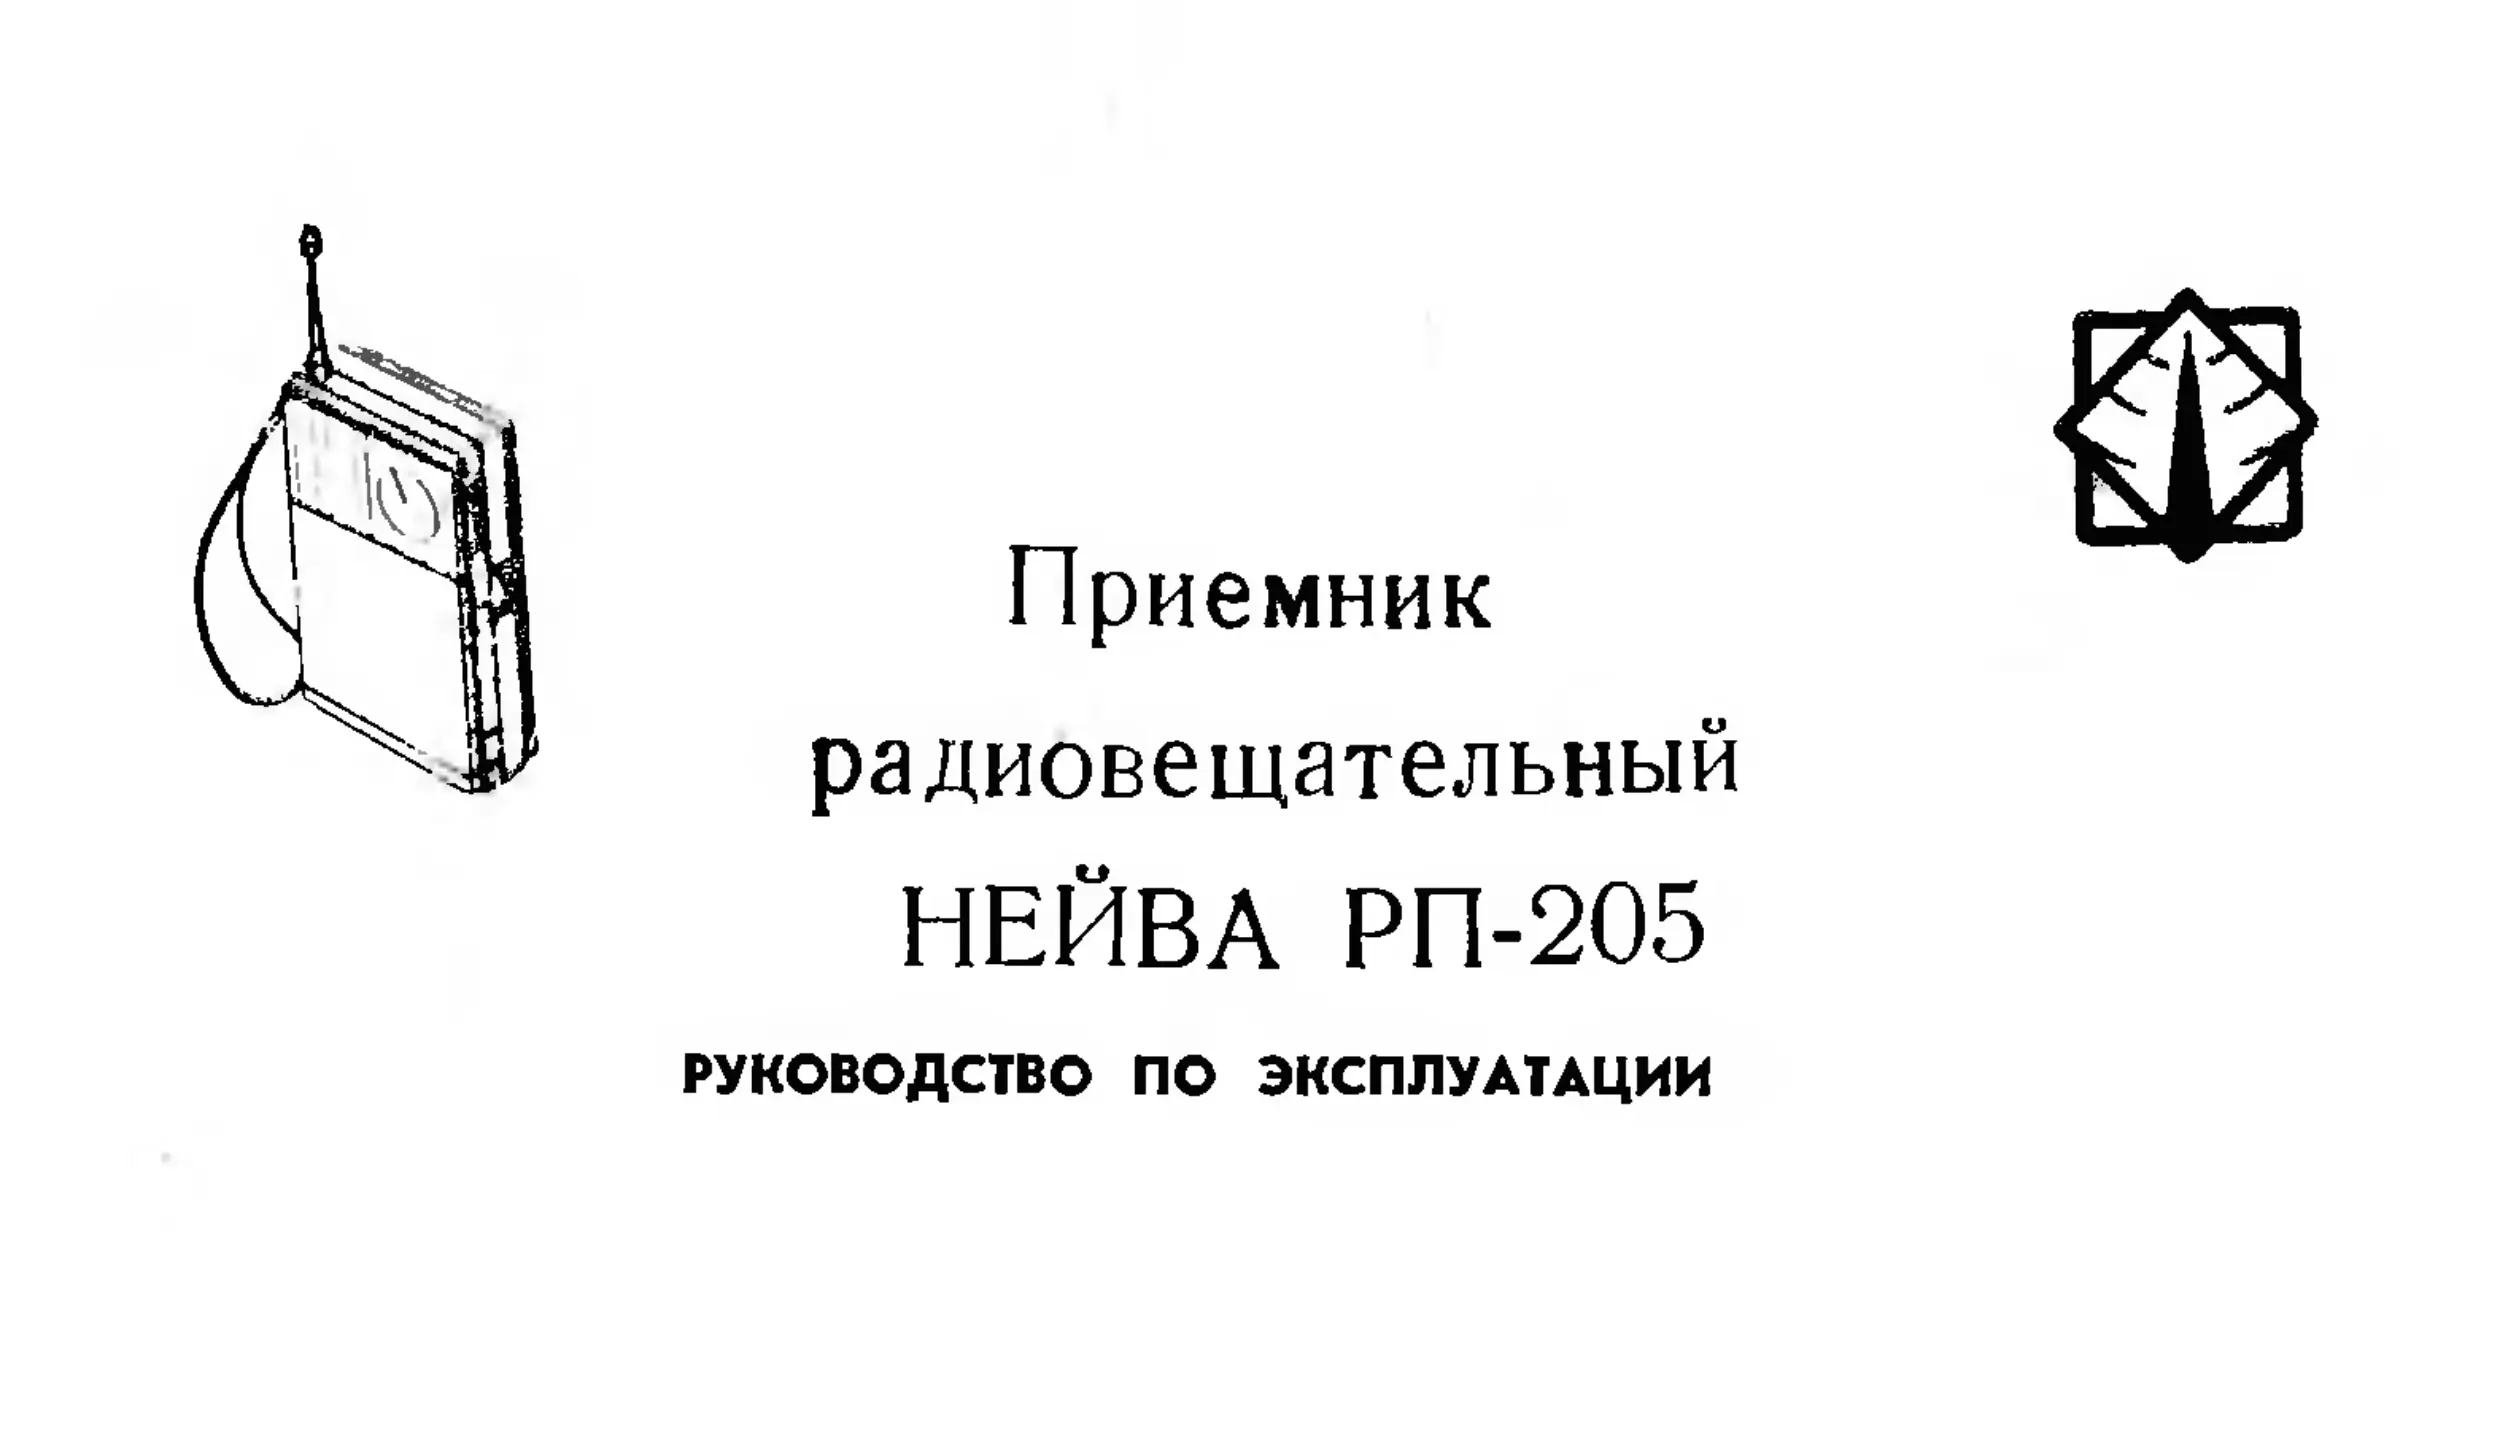  радиовещательный Нейва РП-205. Руководство по эксплуатации - 1991